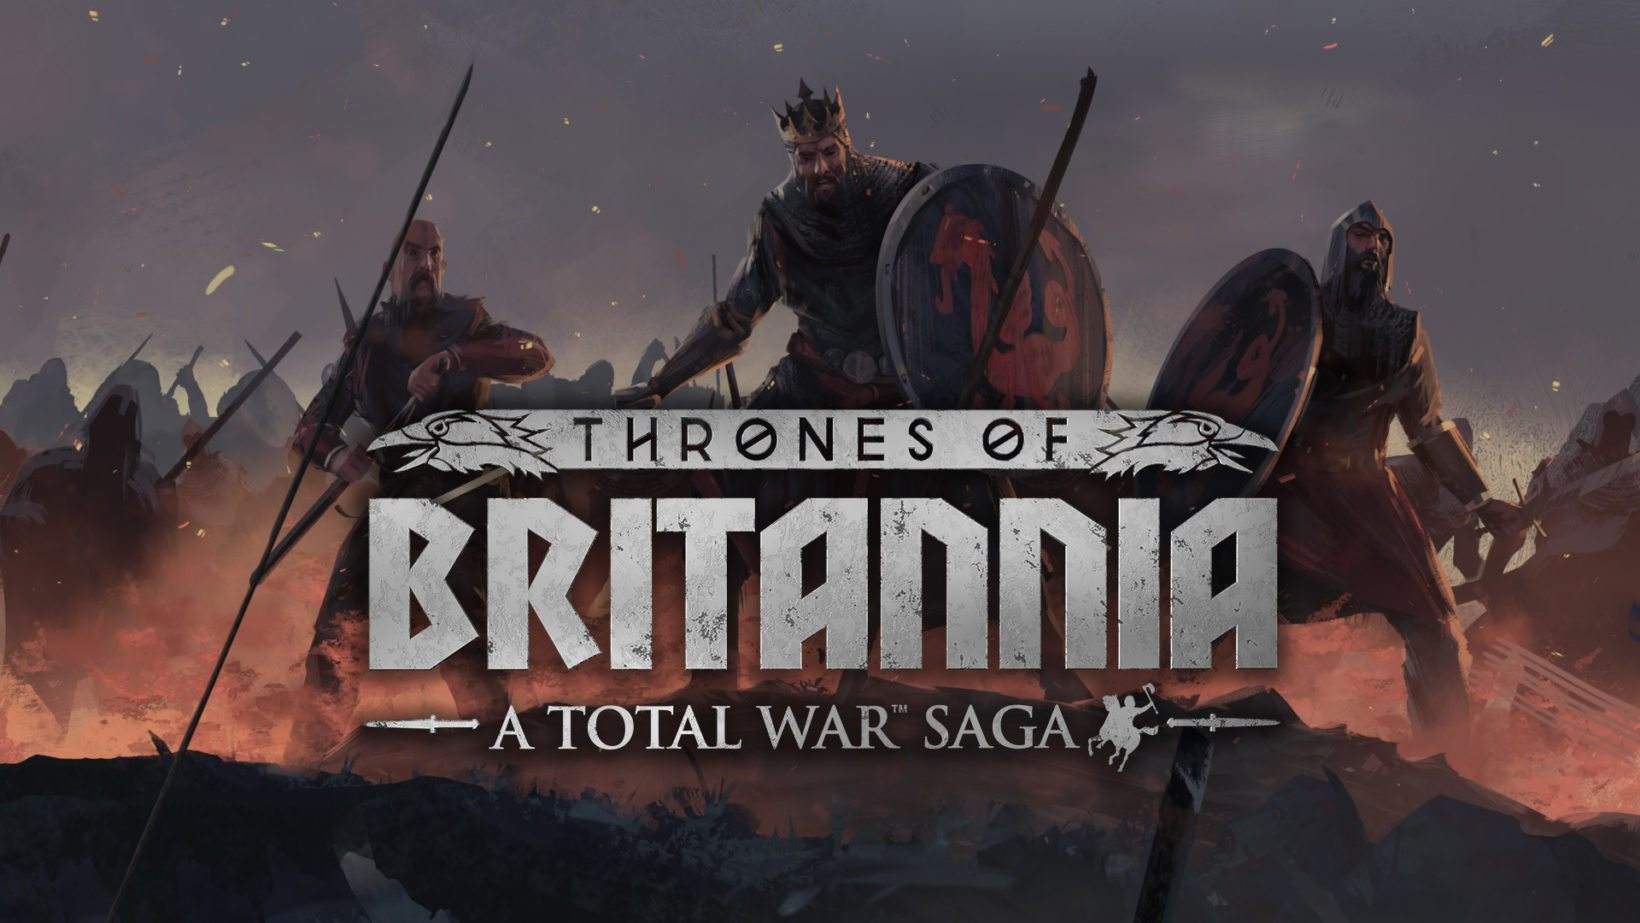 A Total War Saga thrones of britannia